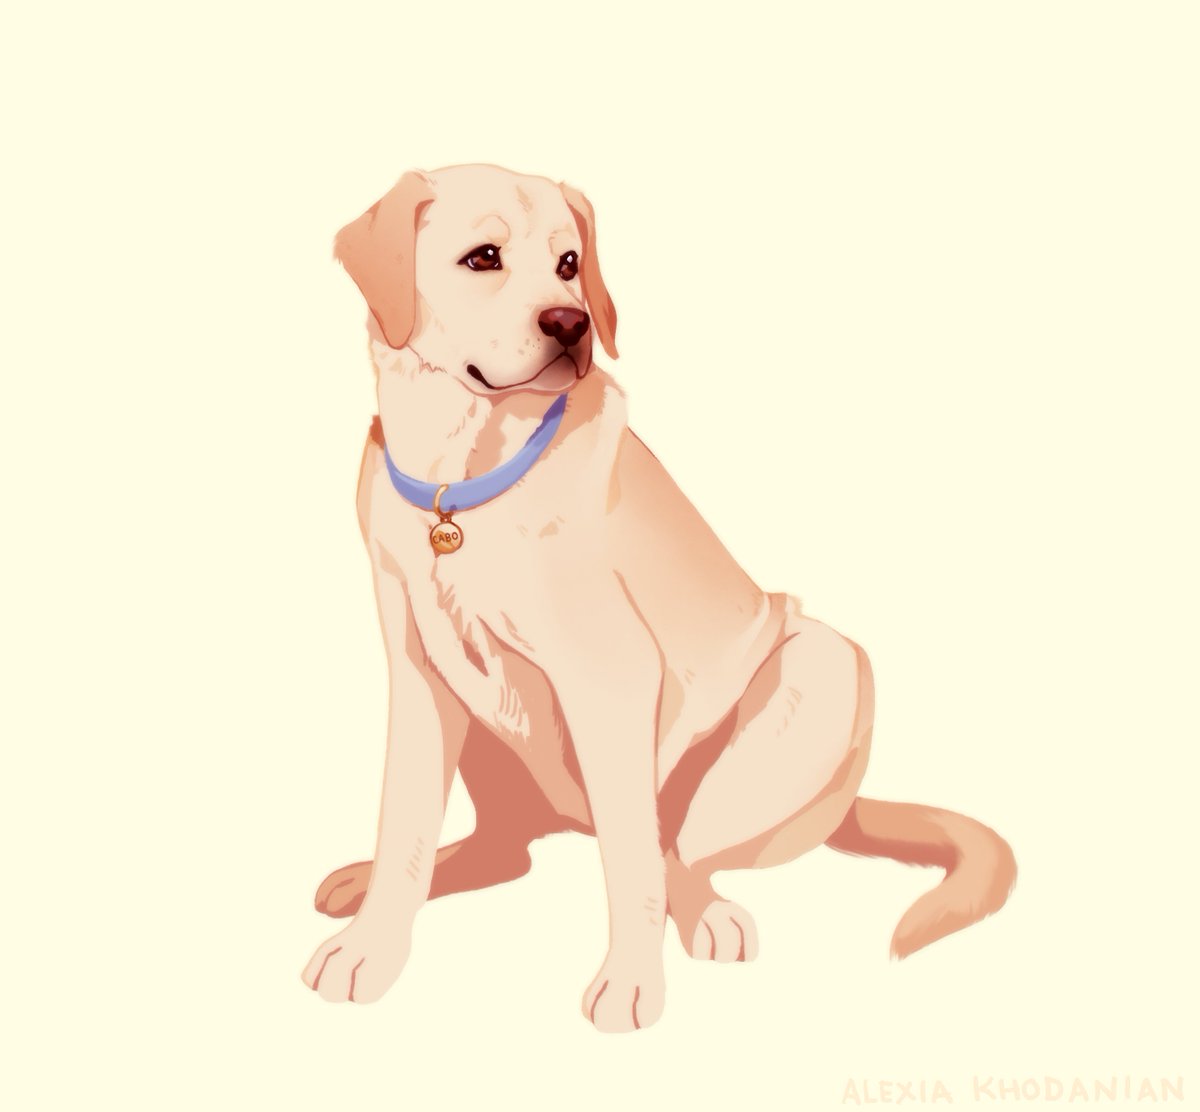  #doggust day 19: Everyone's Favorite, Labrador Retriever!